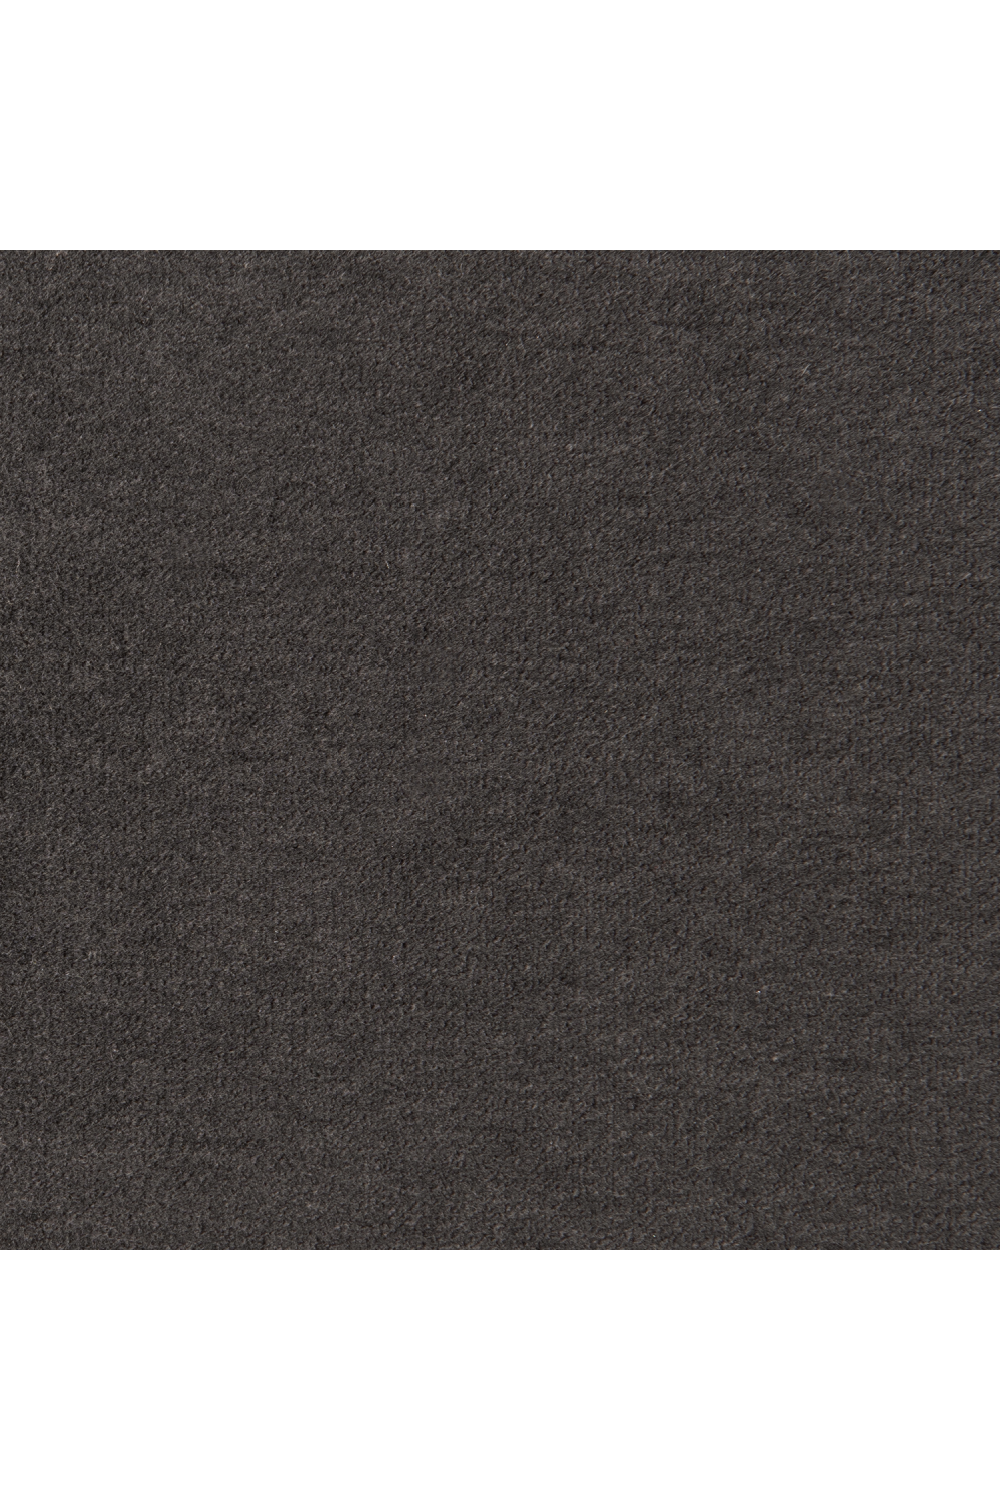 Black Organic-Shaped Sofa | Caracole Eclipse | Oroa.com